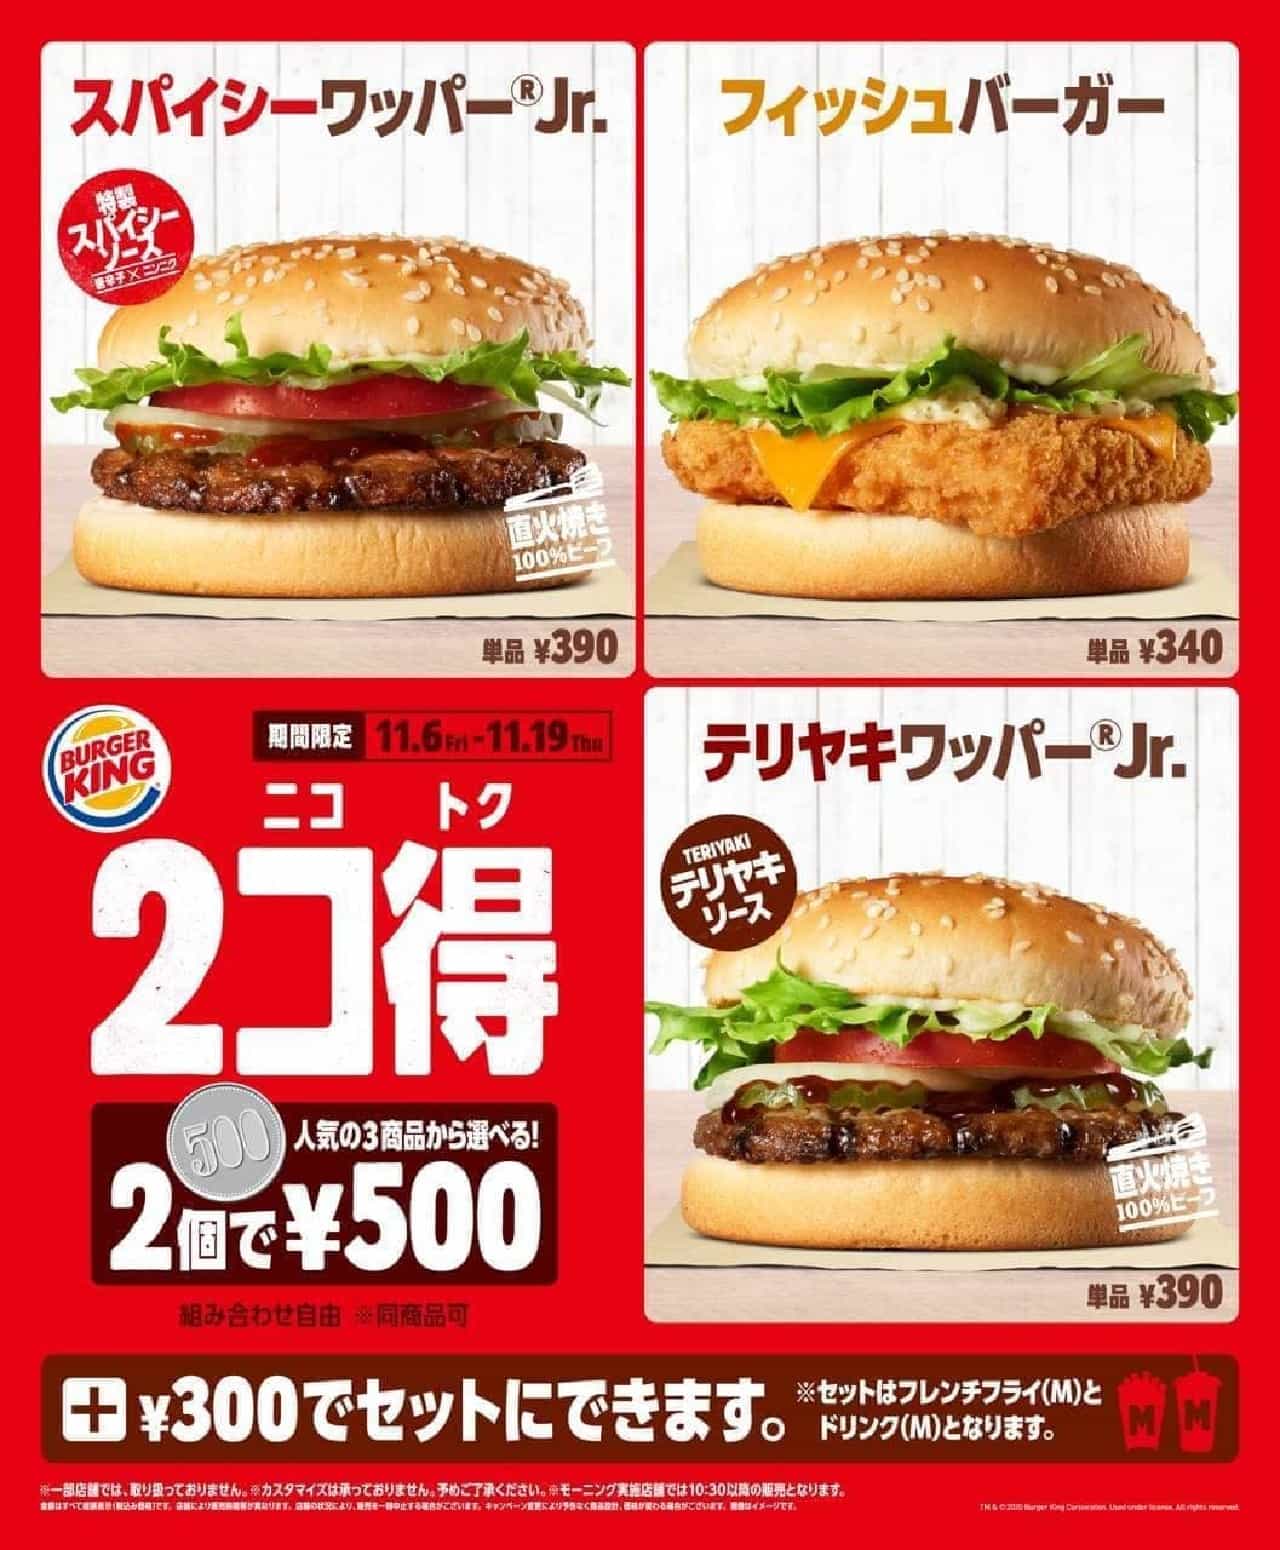 2 Co-Profit Campaign Burger King